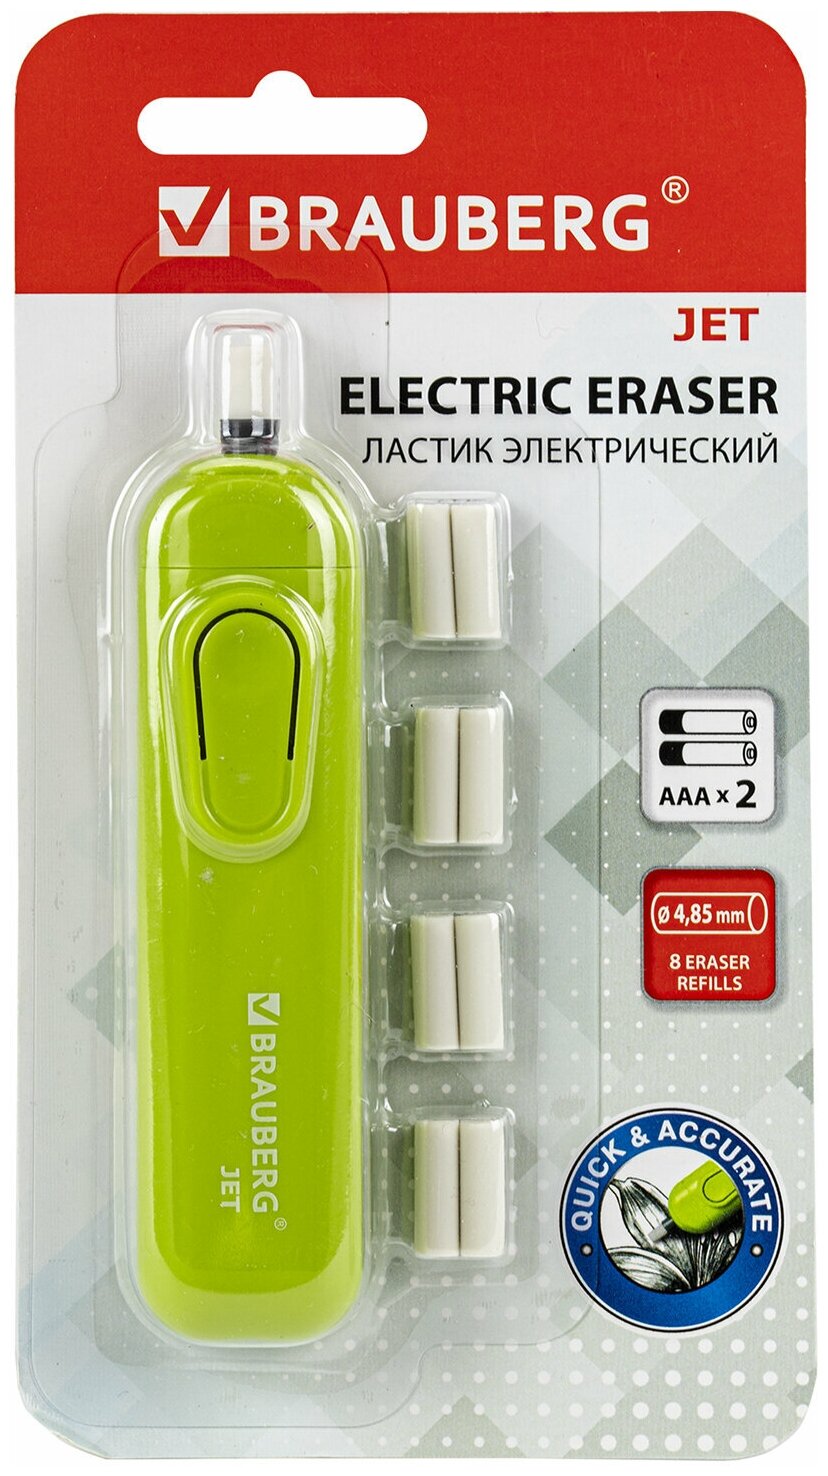 Ластик электрический BRAUBERG JET, питание от 2 батареек ААА, 8 сменных ластиков, салатовый, 229615 2 шт .